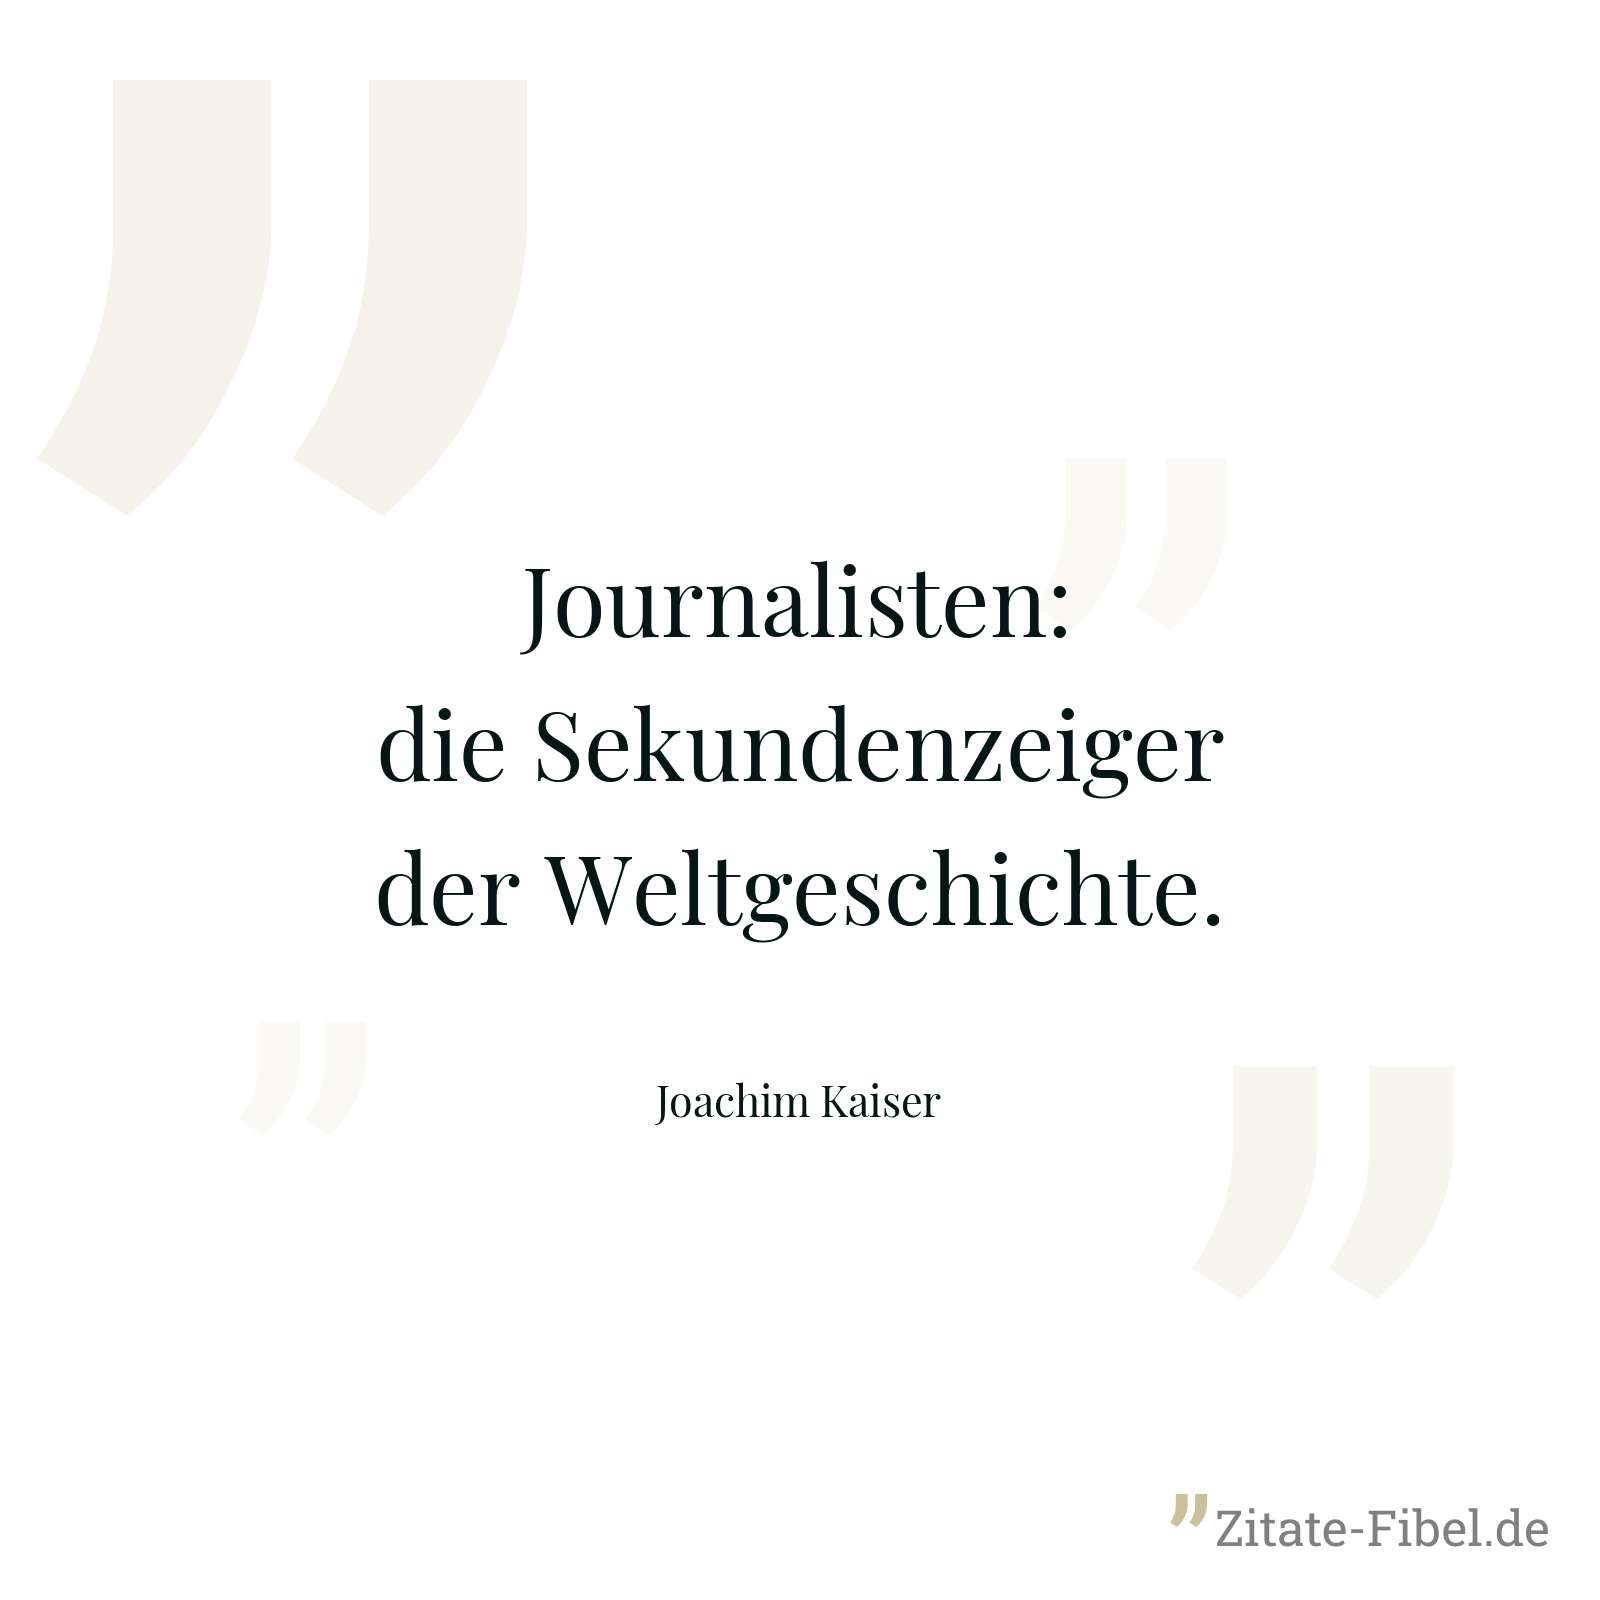 Journalisten: die Sekundenzeiger der Weltgeschichte. - Joachim Kaiser